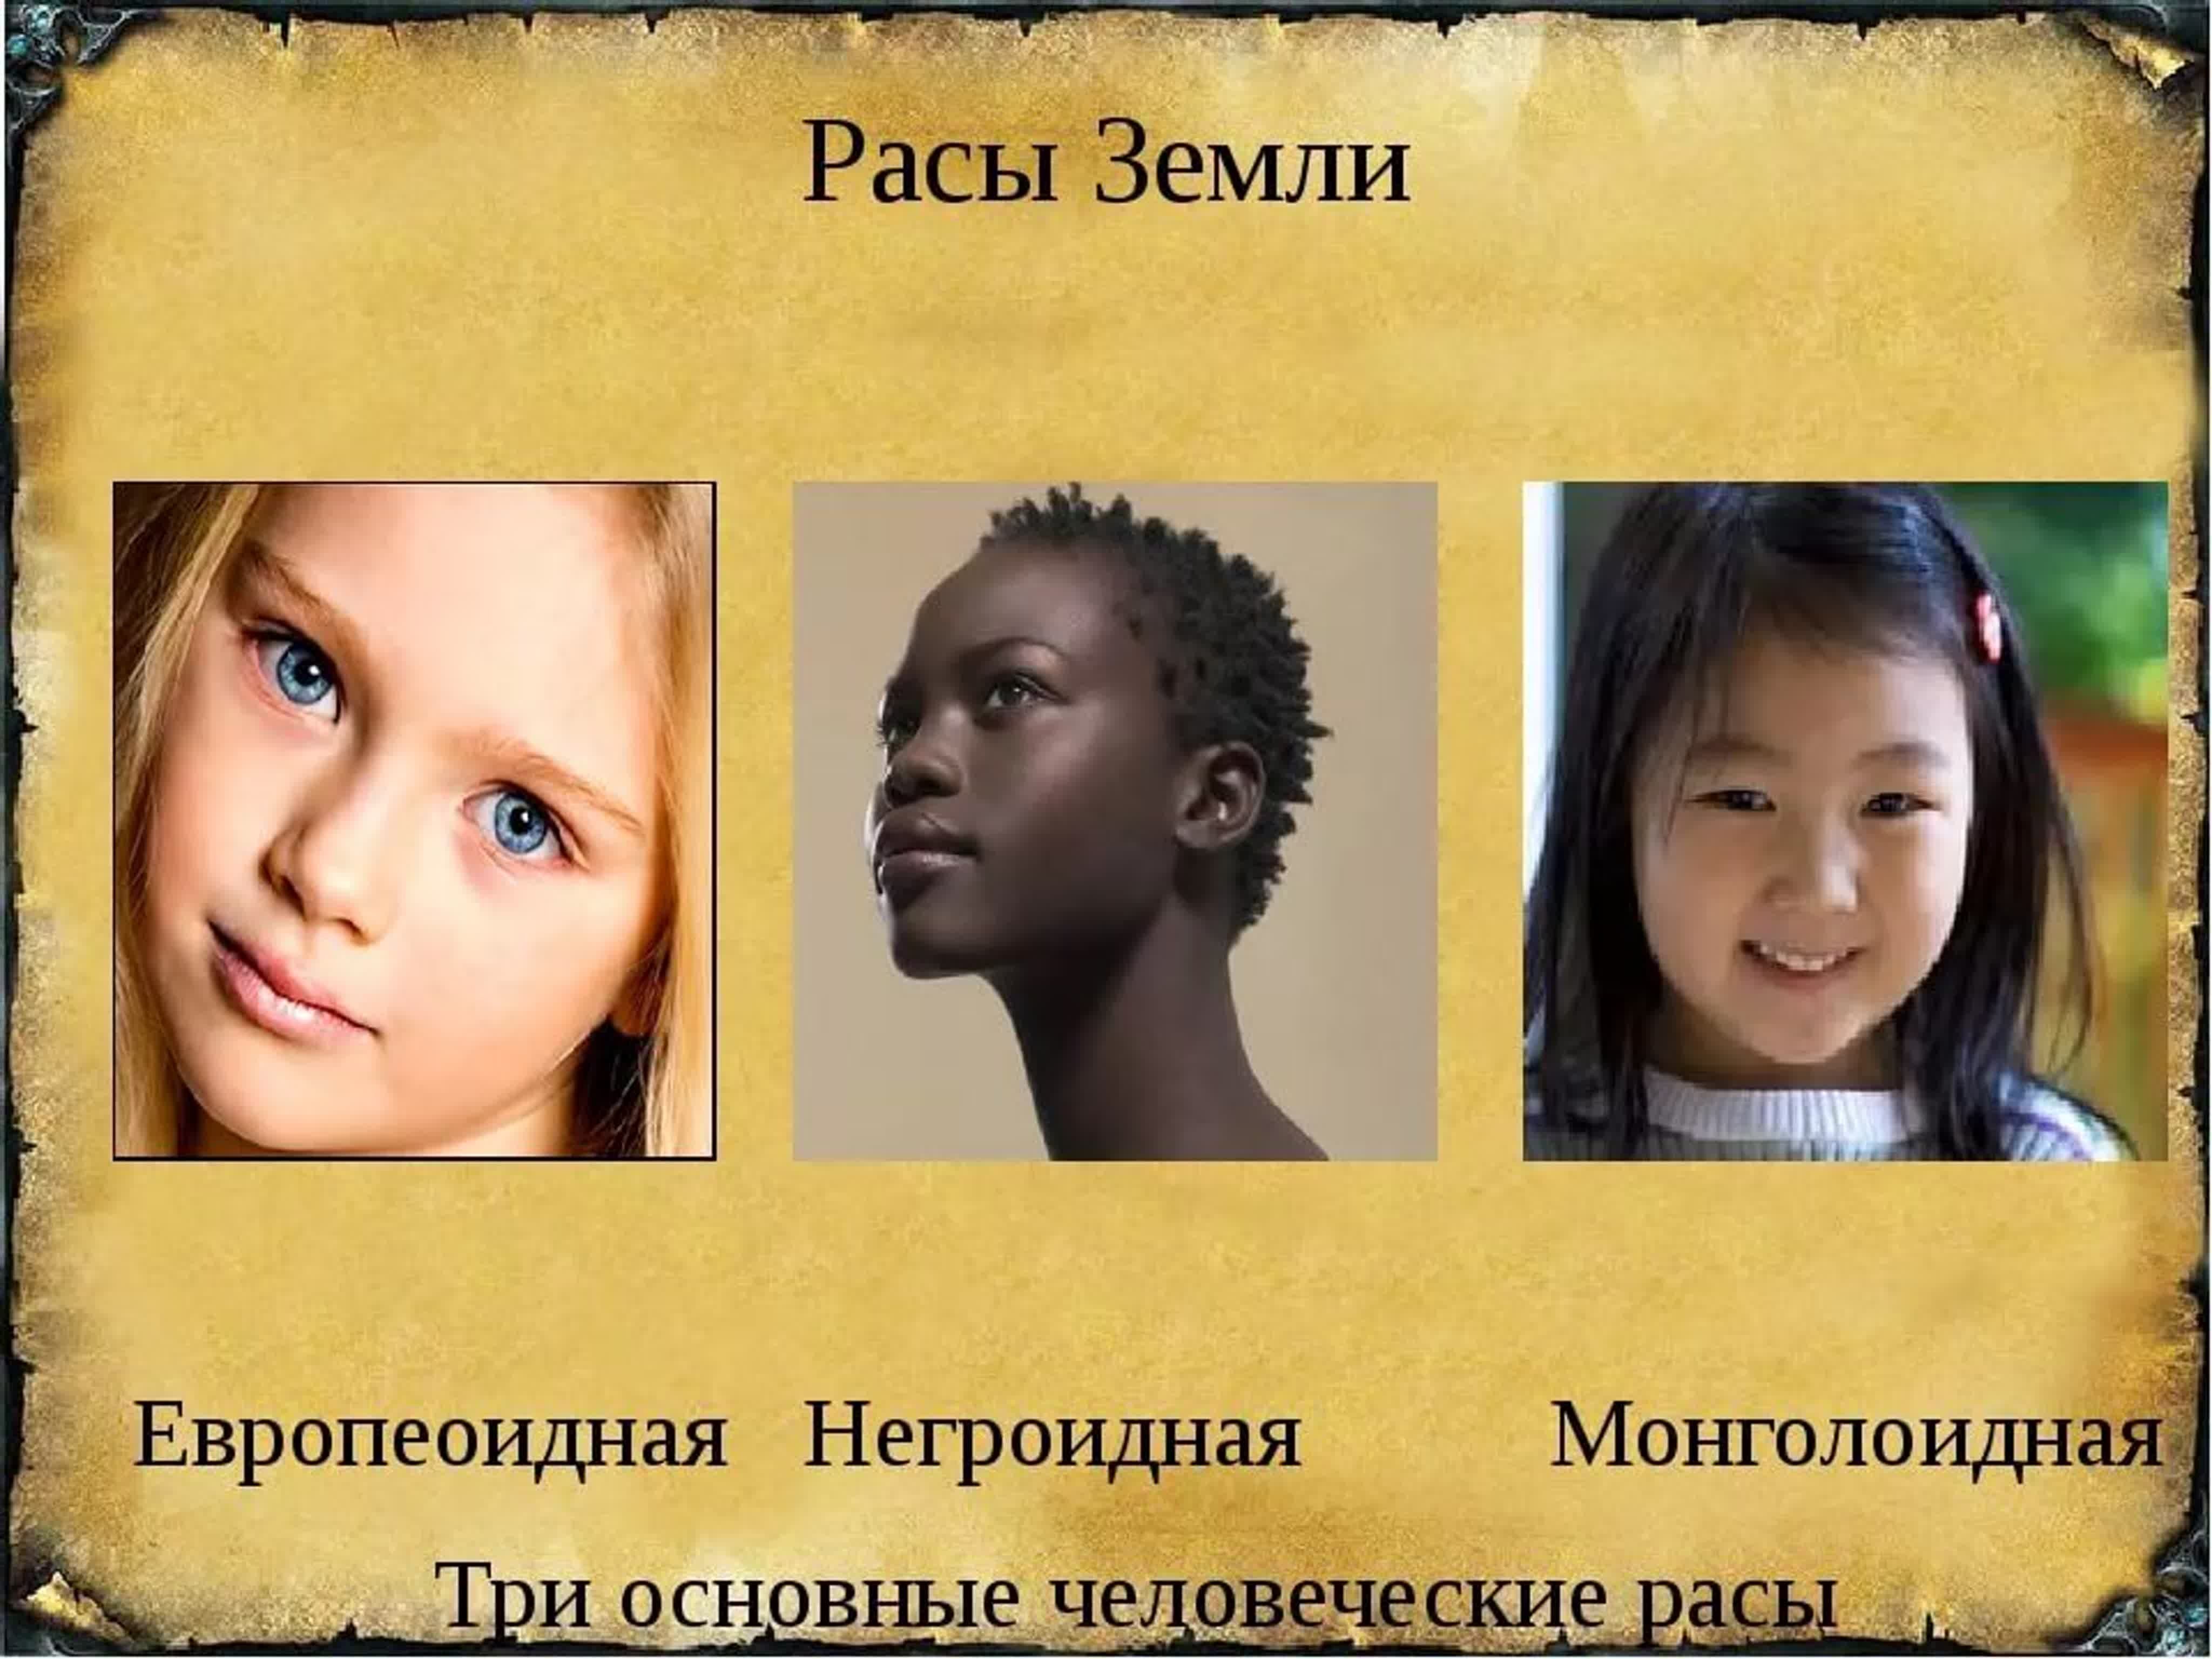 Признаки расы европеоидная монголоидная негроидная